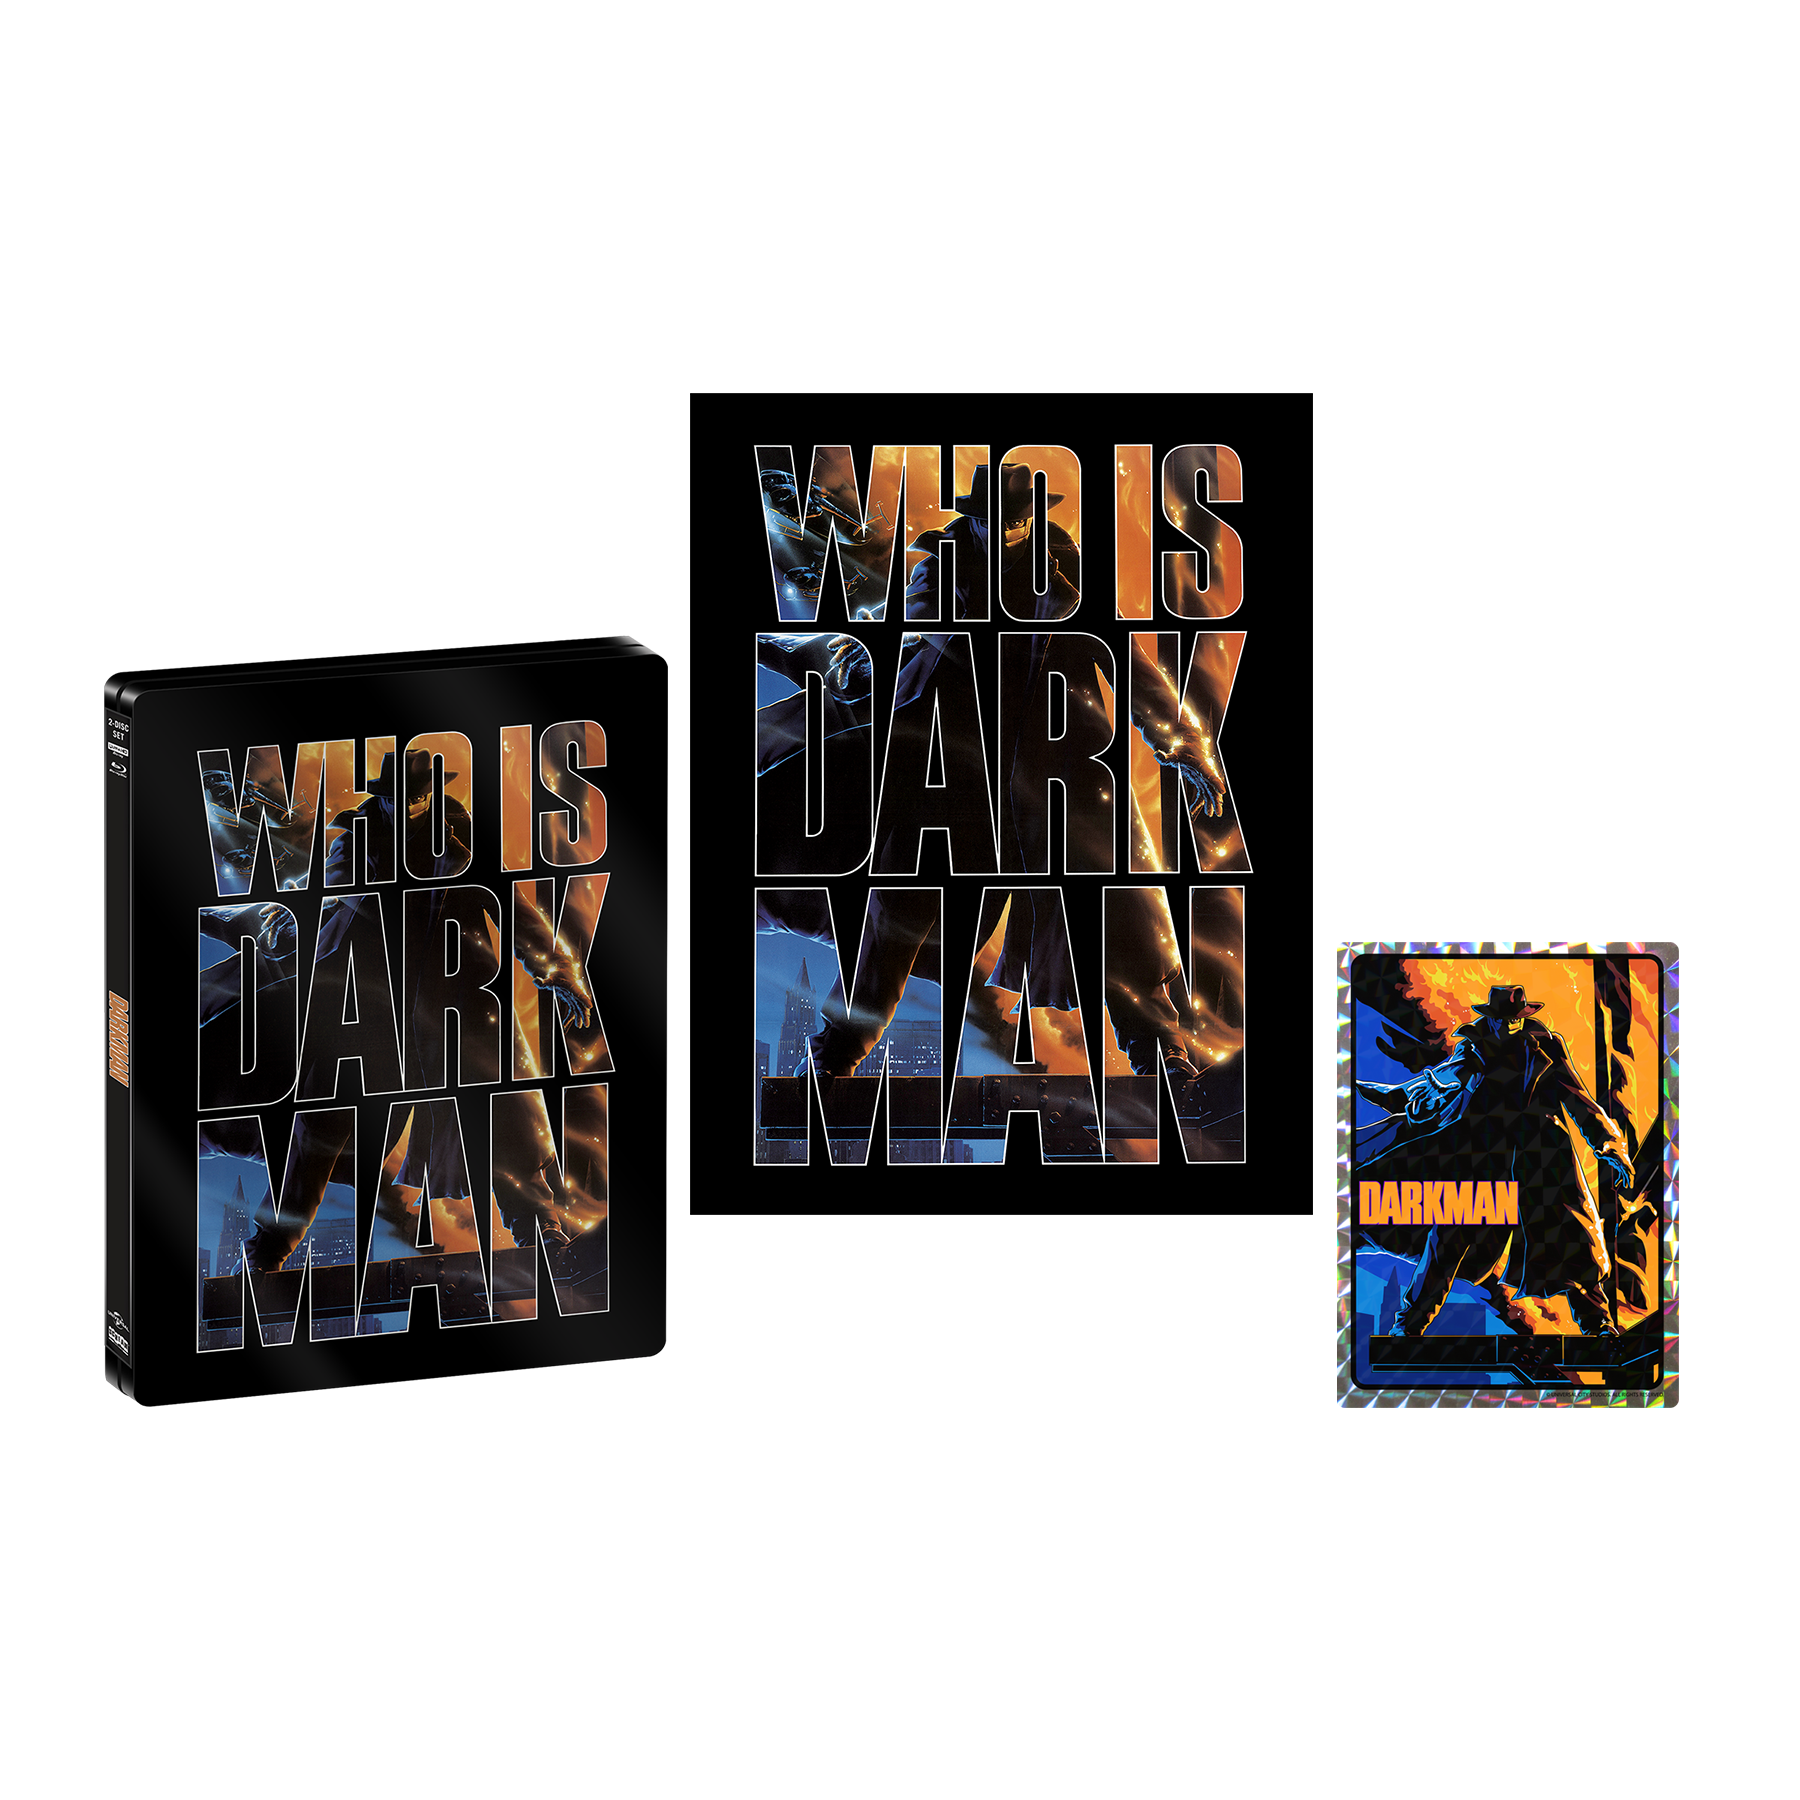 Darkman [Limited Edition Steelbook] + Prism Sticker + Poster – Shout!  Factory